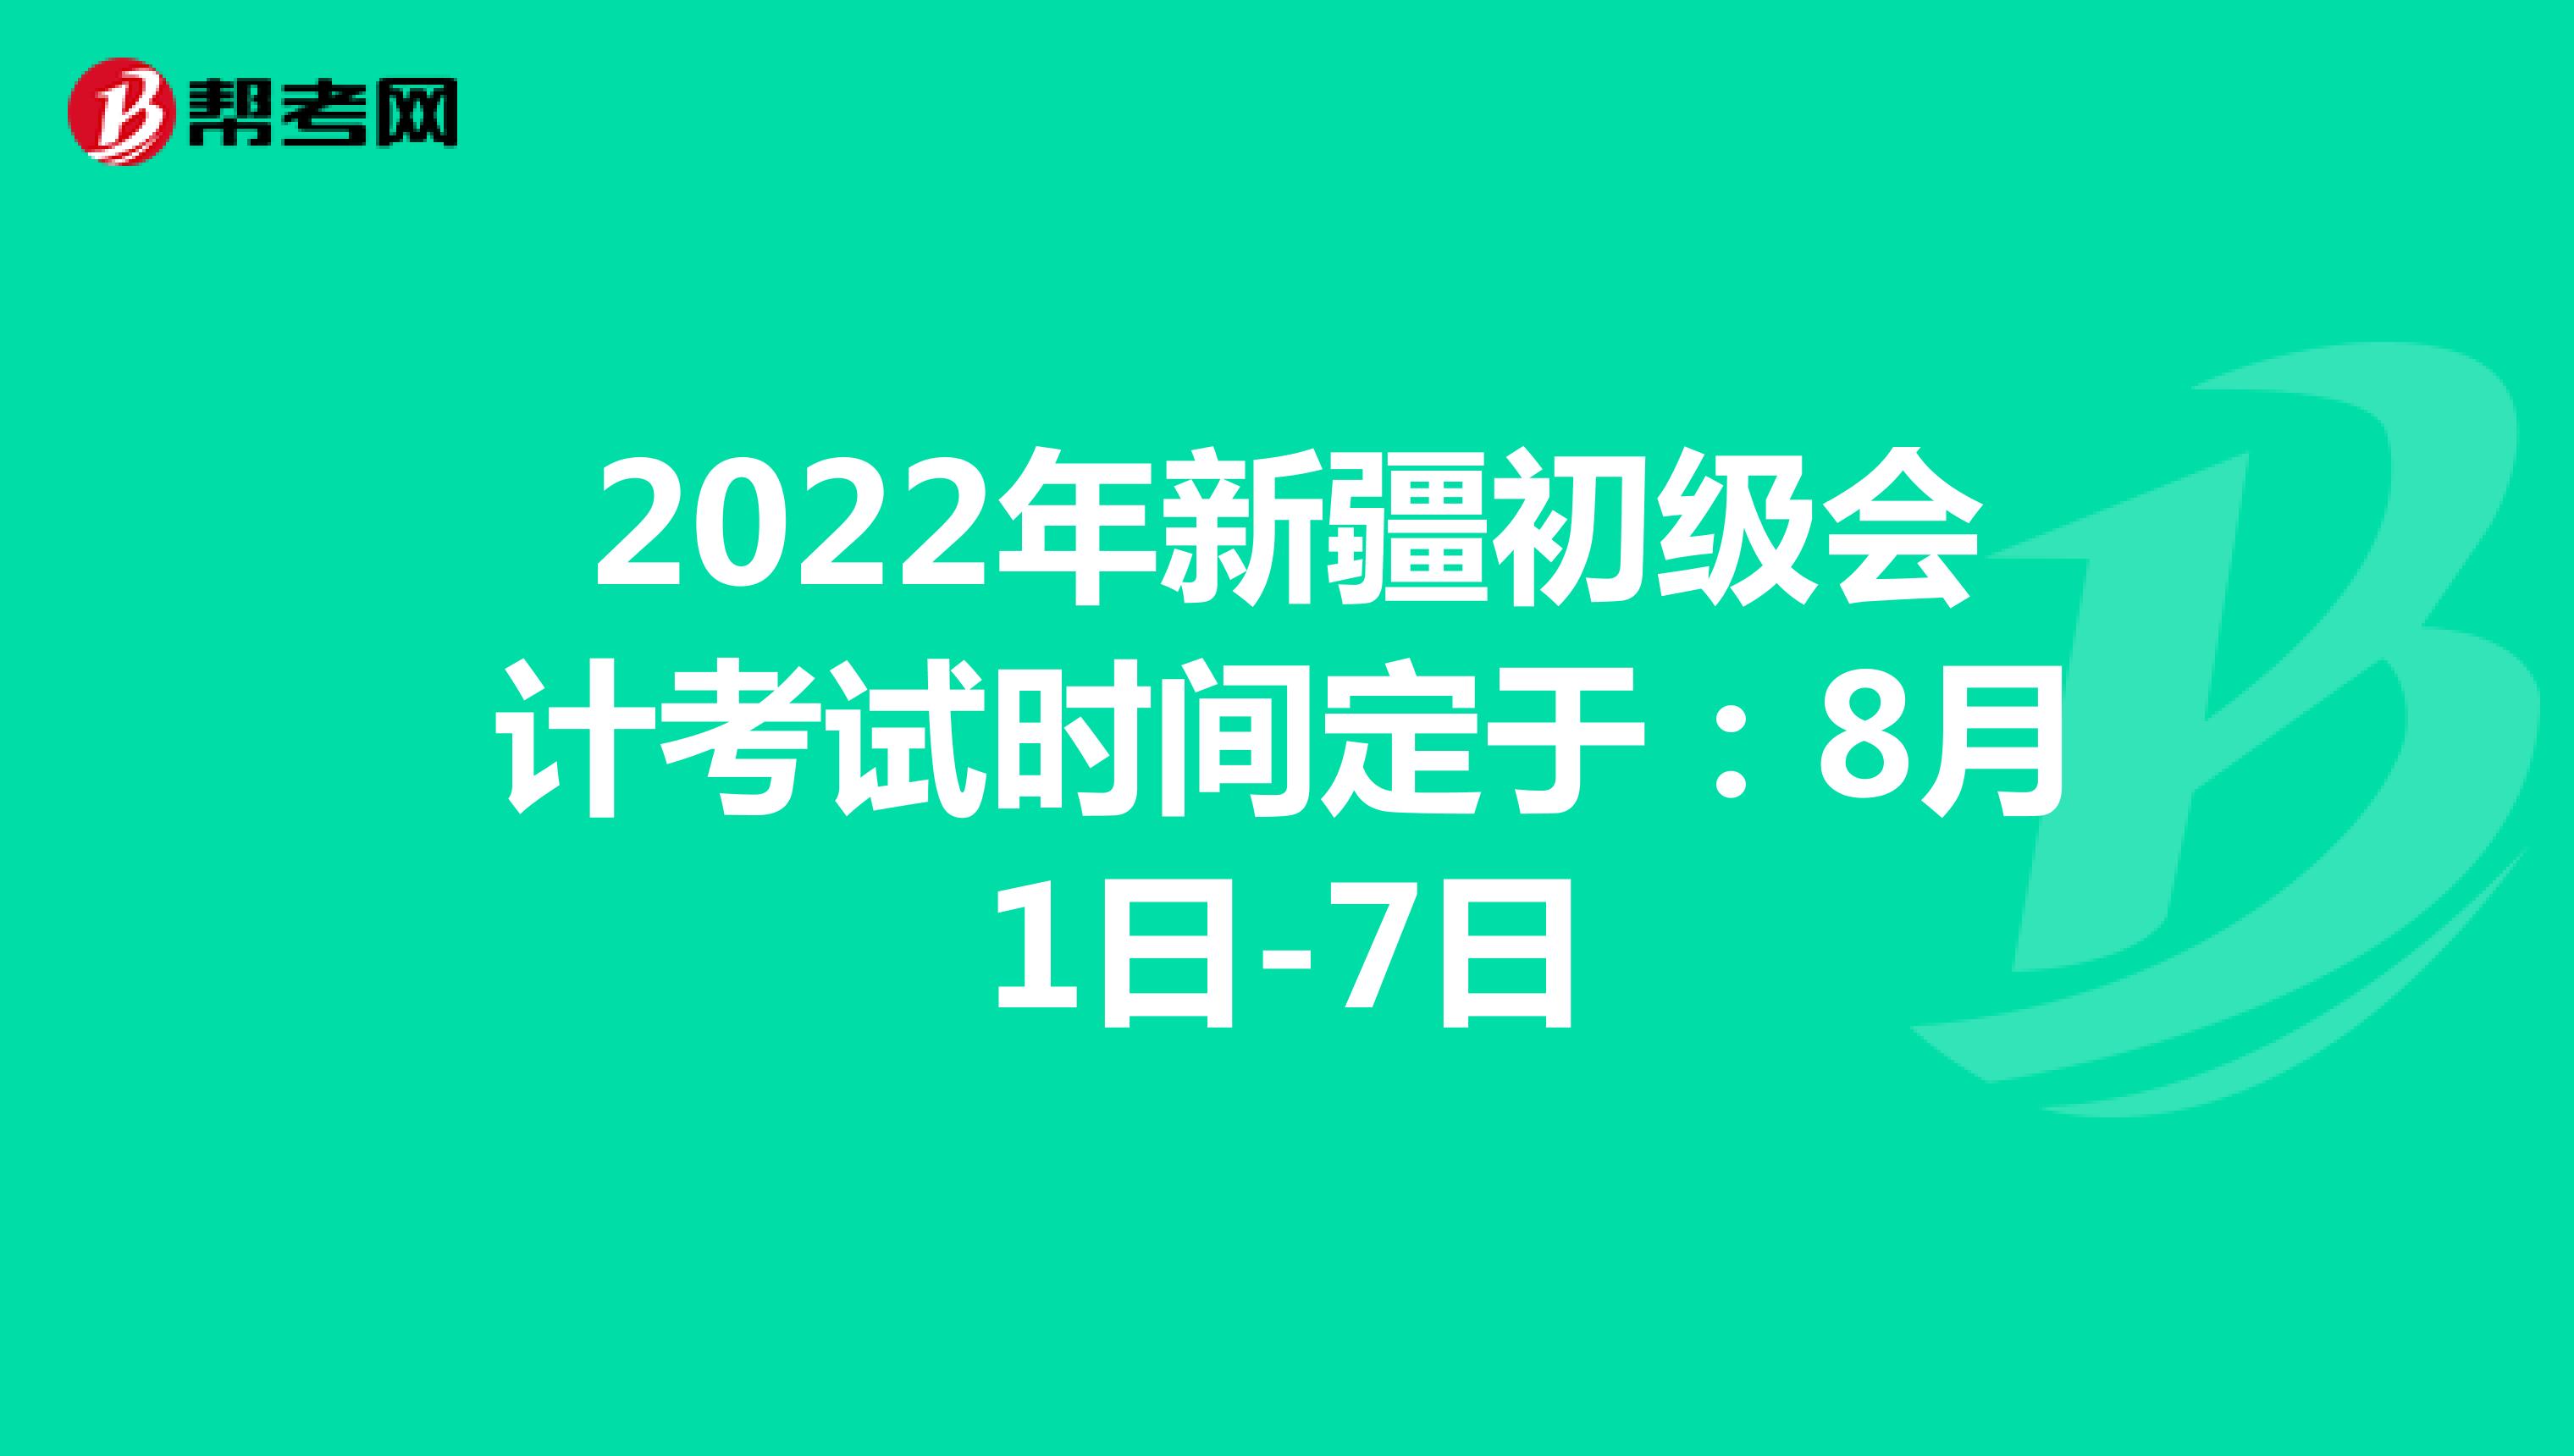 2022年新疆初级会计考试时间定于：8月1日-7日